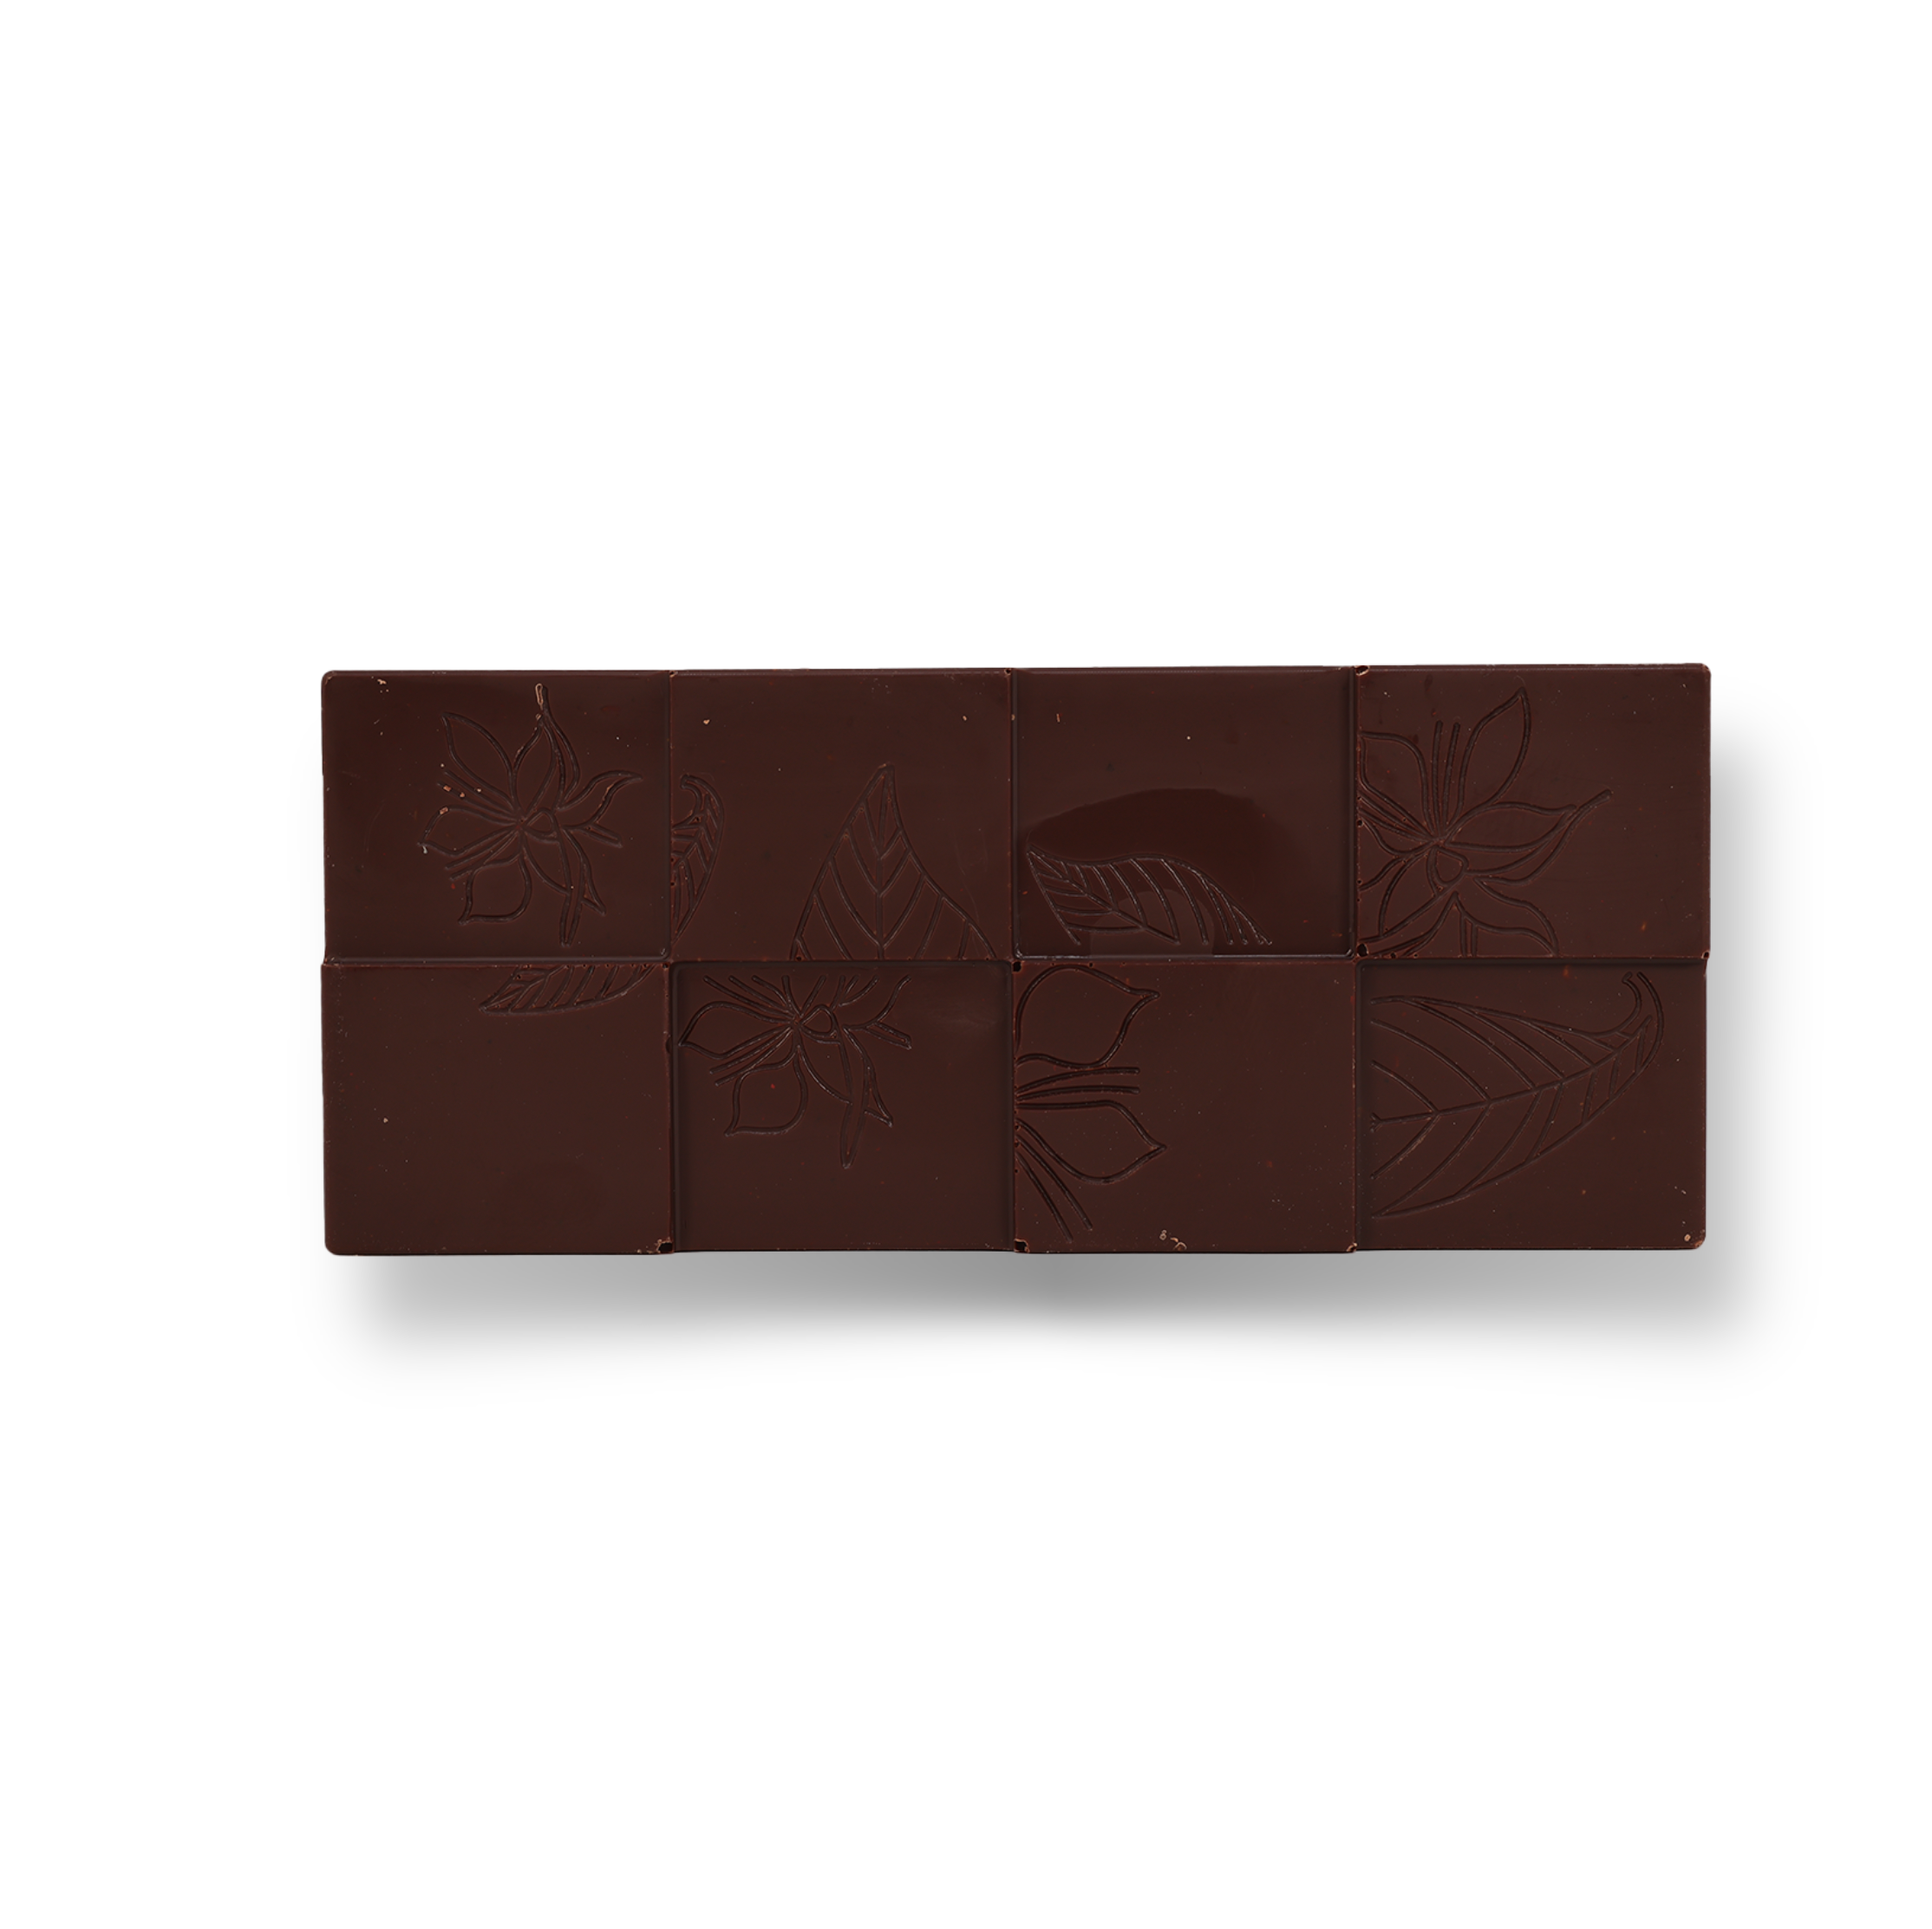 Alsterblick lütt – Edelbitterschokolade, 50g